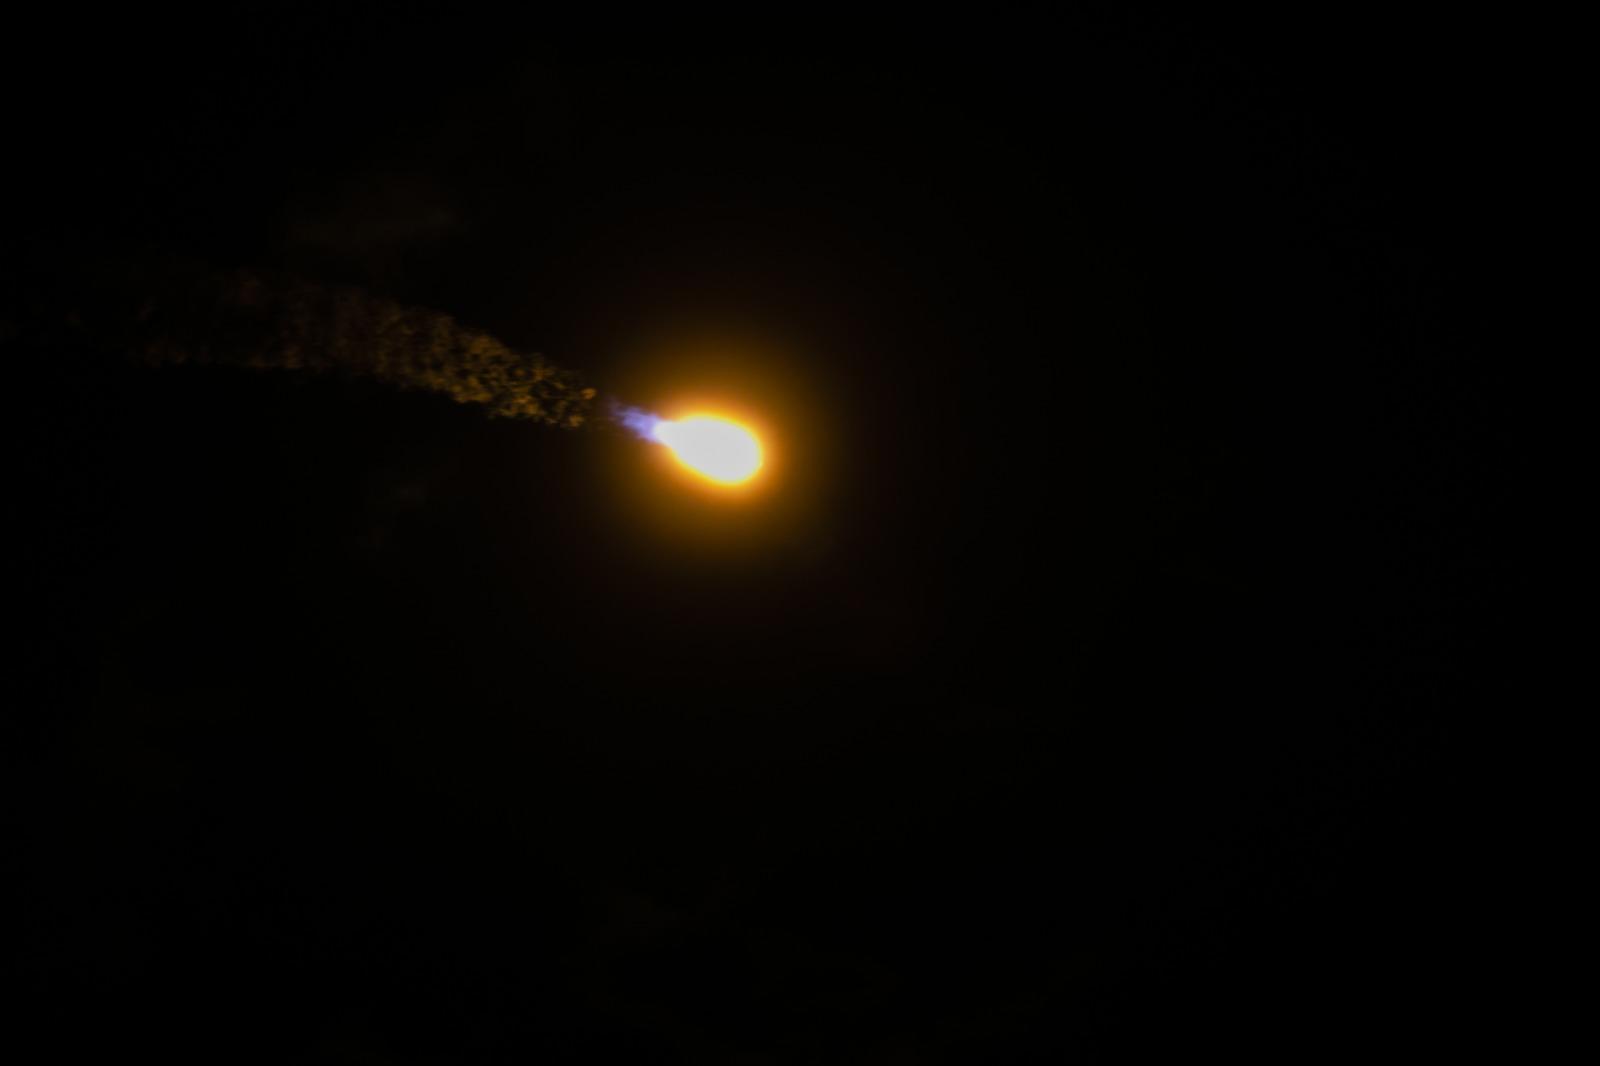 Türksat 5A uydusu fırlatıldı